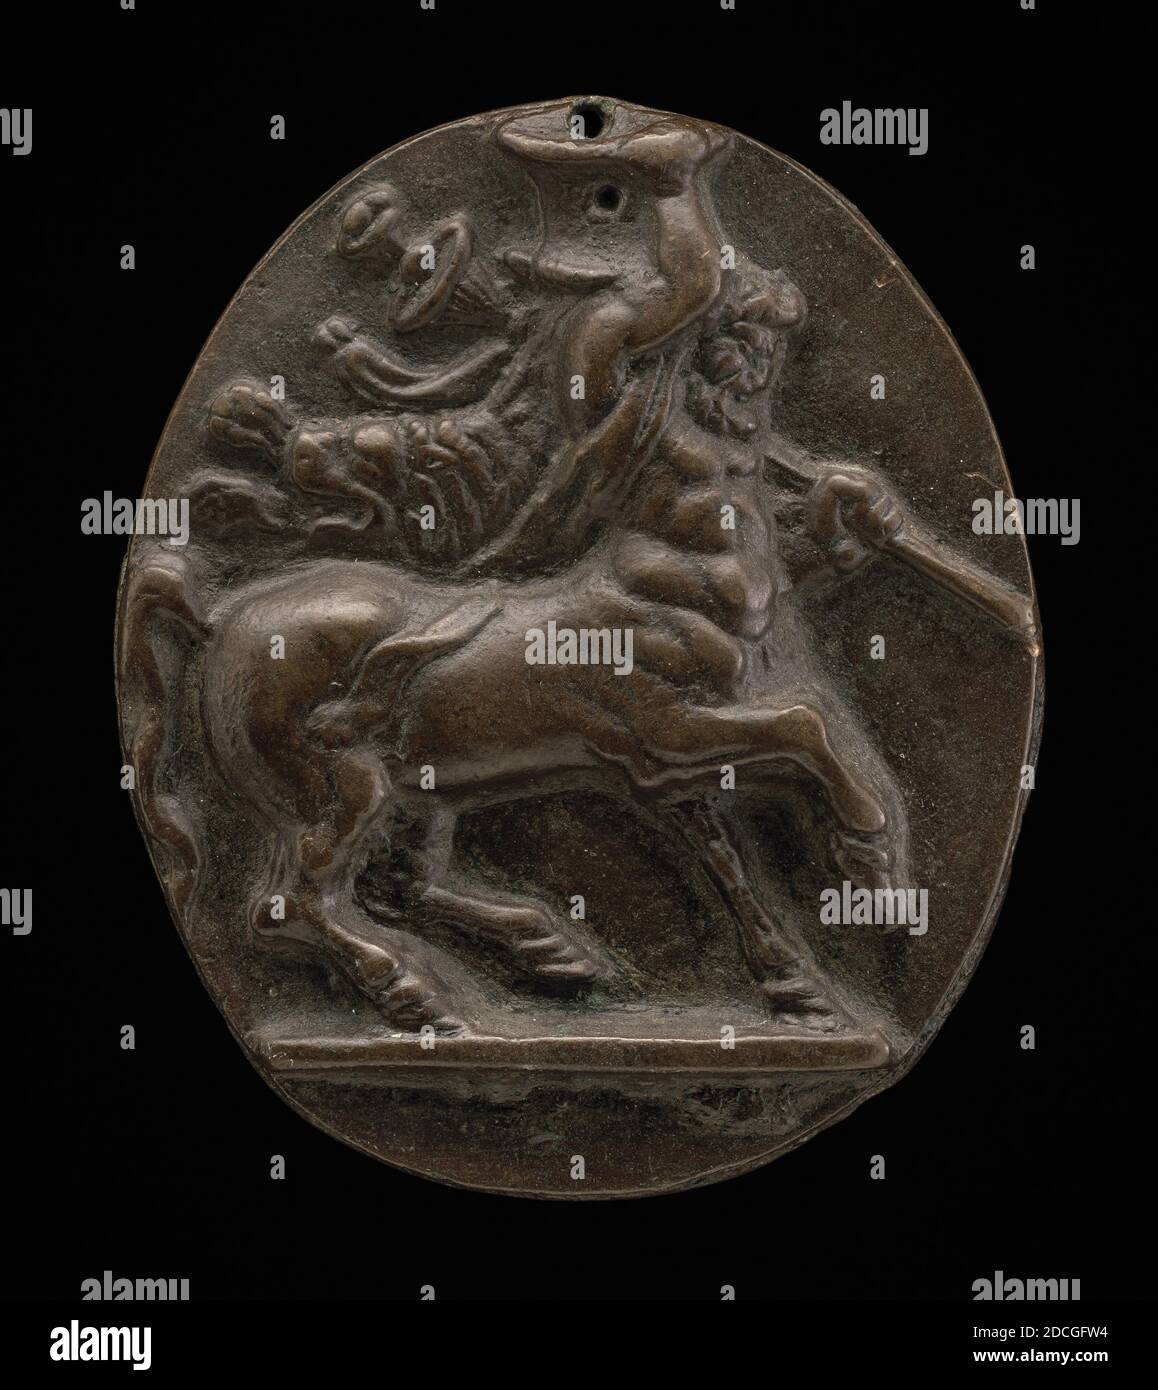 Centauro de bronce fotografías e imágenes de alta resolución - Página 2 -  Alamy